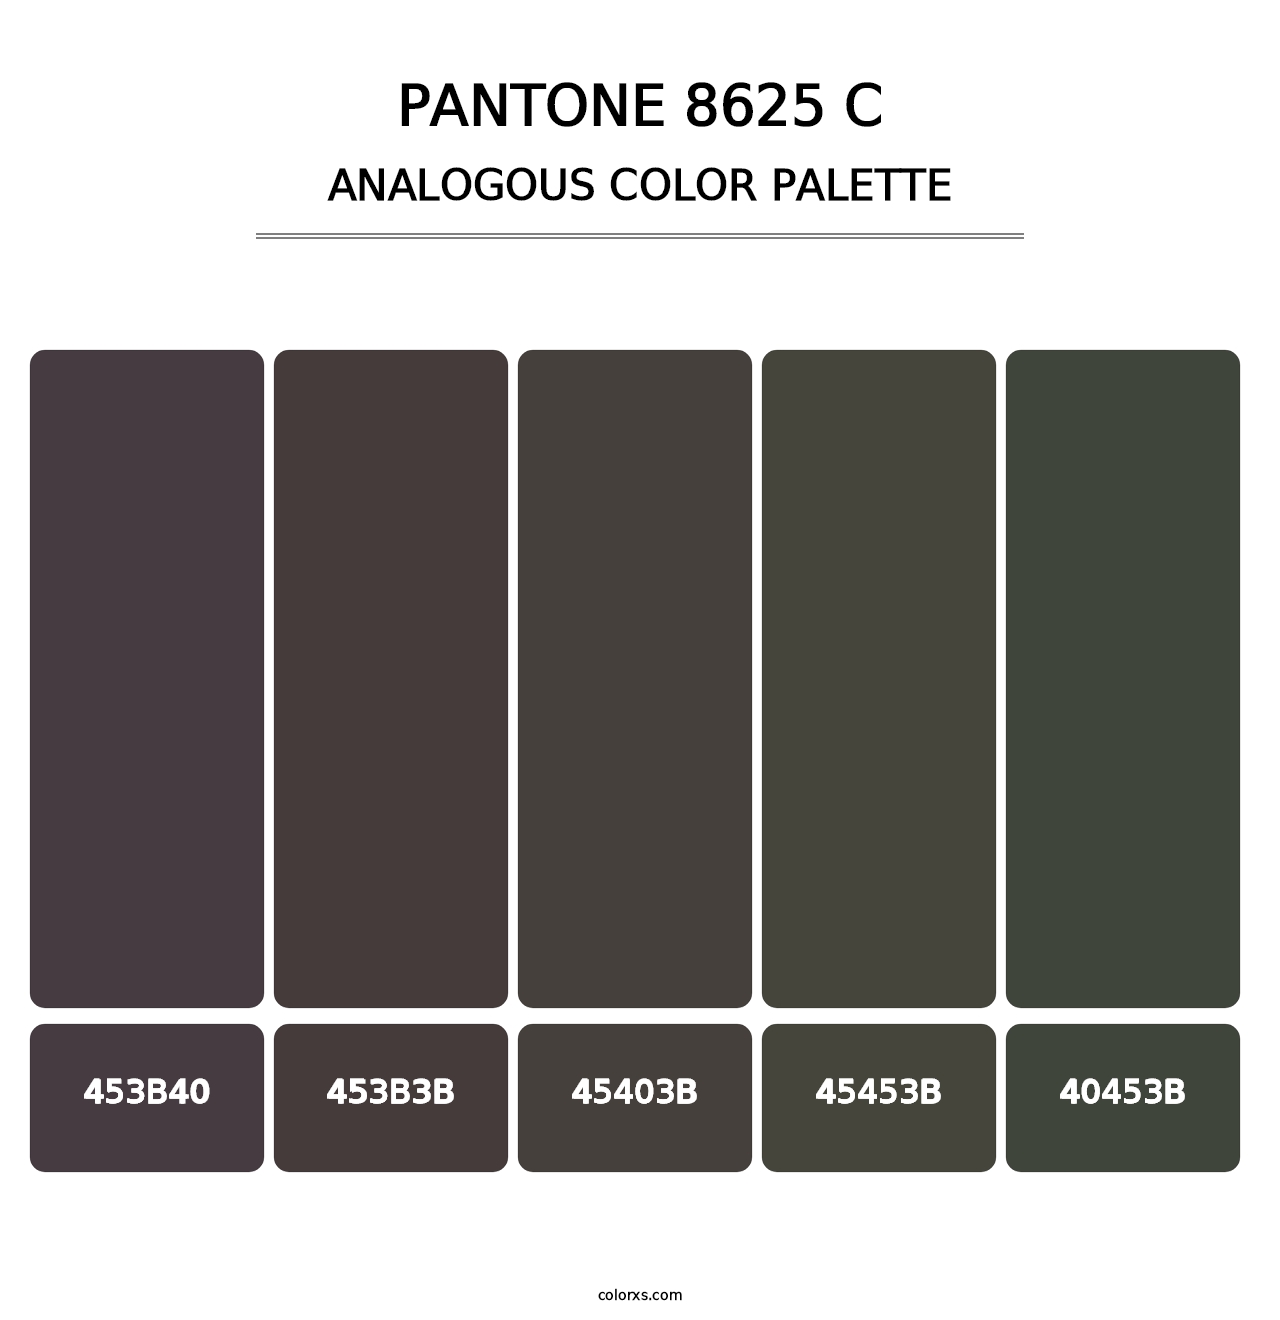 PANTONE 8625 C - Analogous Color Palette